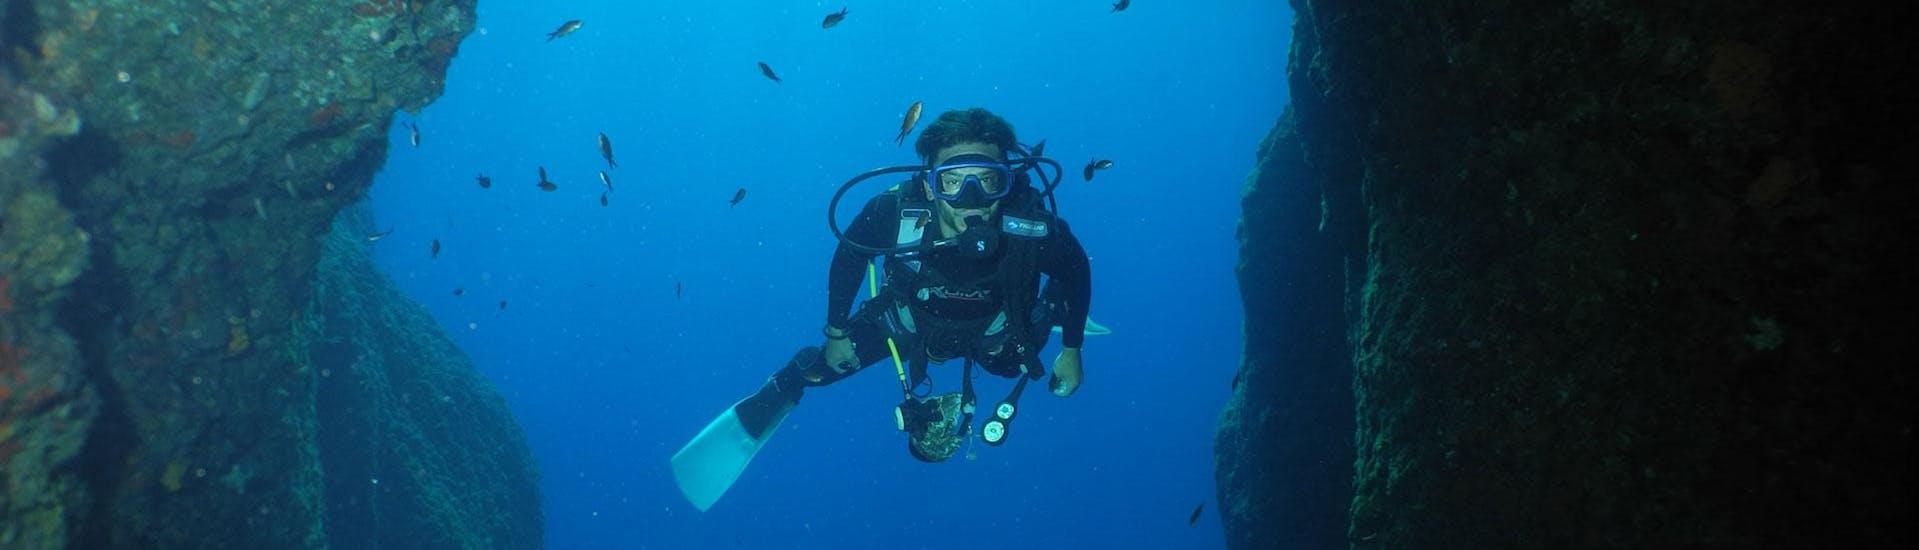 Een duiker kijkt recht in de camera tijdens een duik met Diver's Paradise Zakynthos.